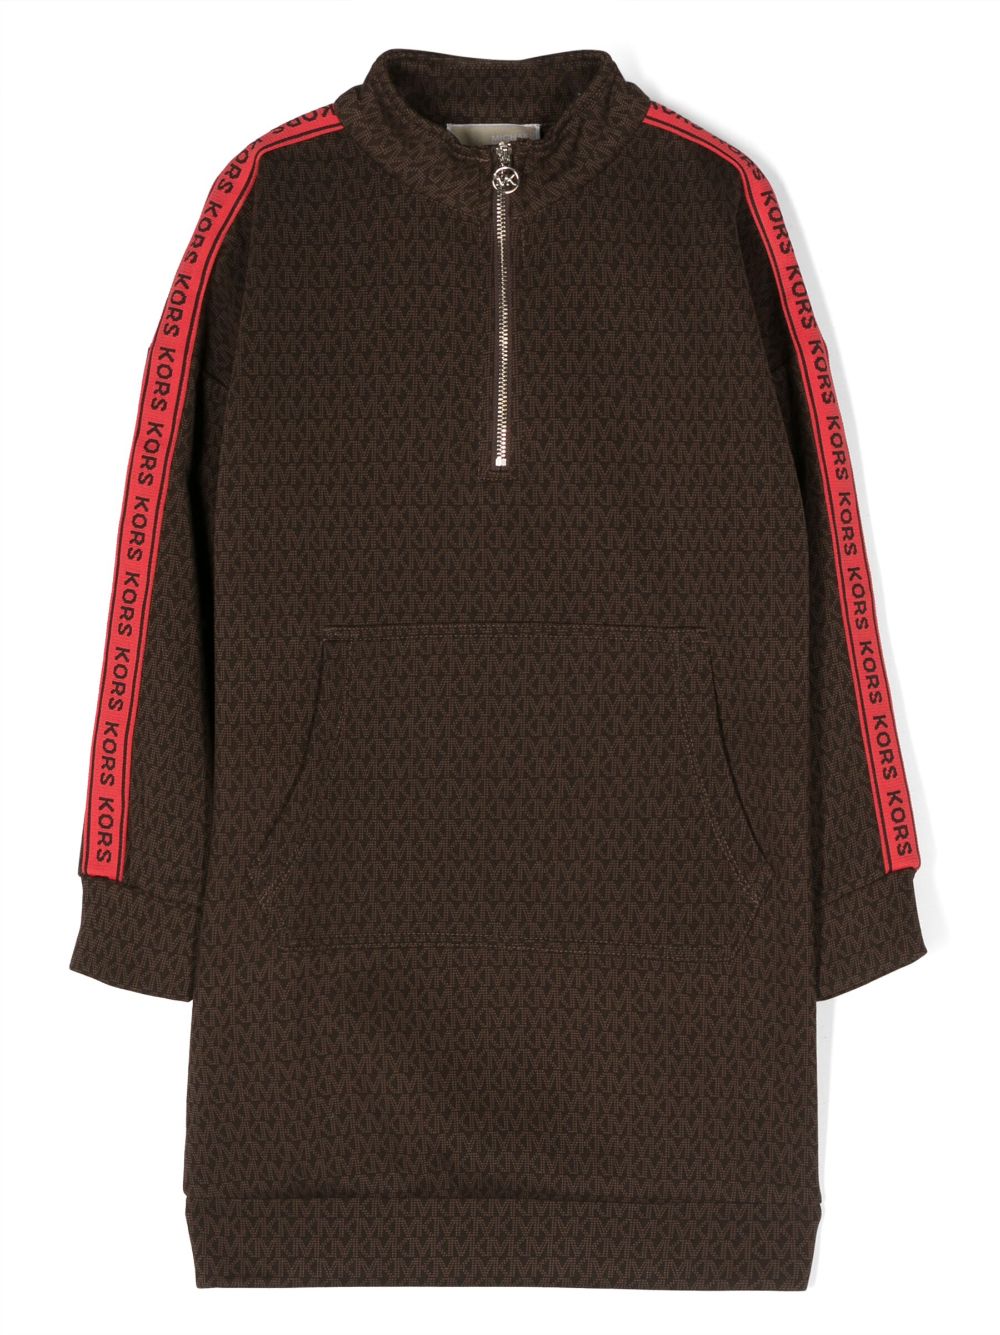 [빠른배송] 마이클코어스 키즈 모노그램 패턴 긴소매 드레스 R12165319